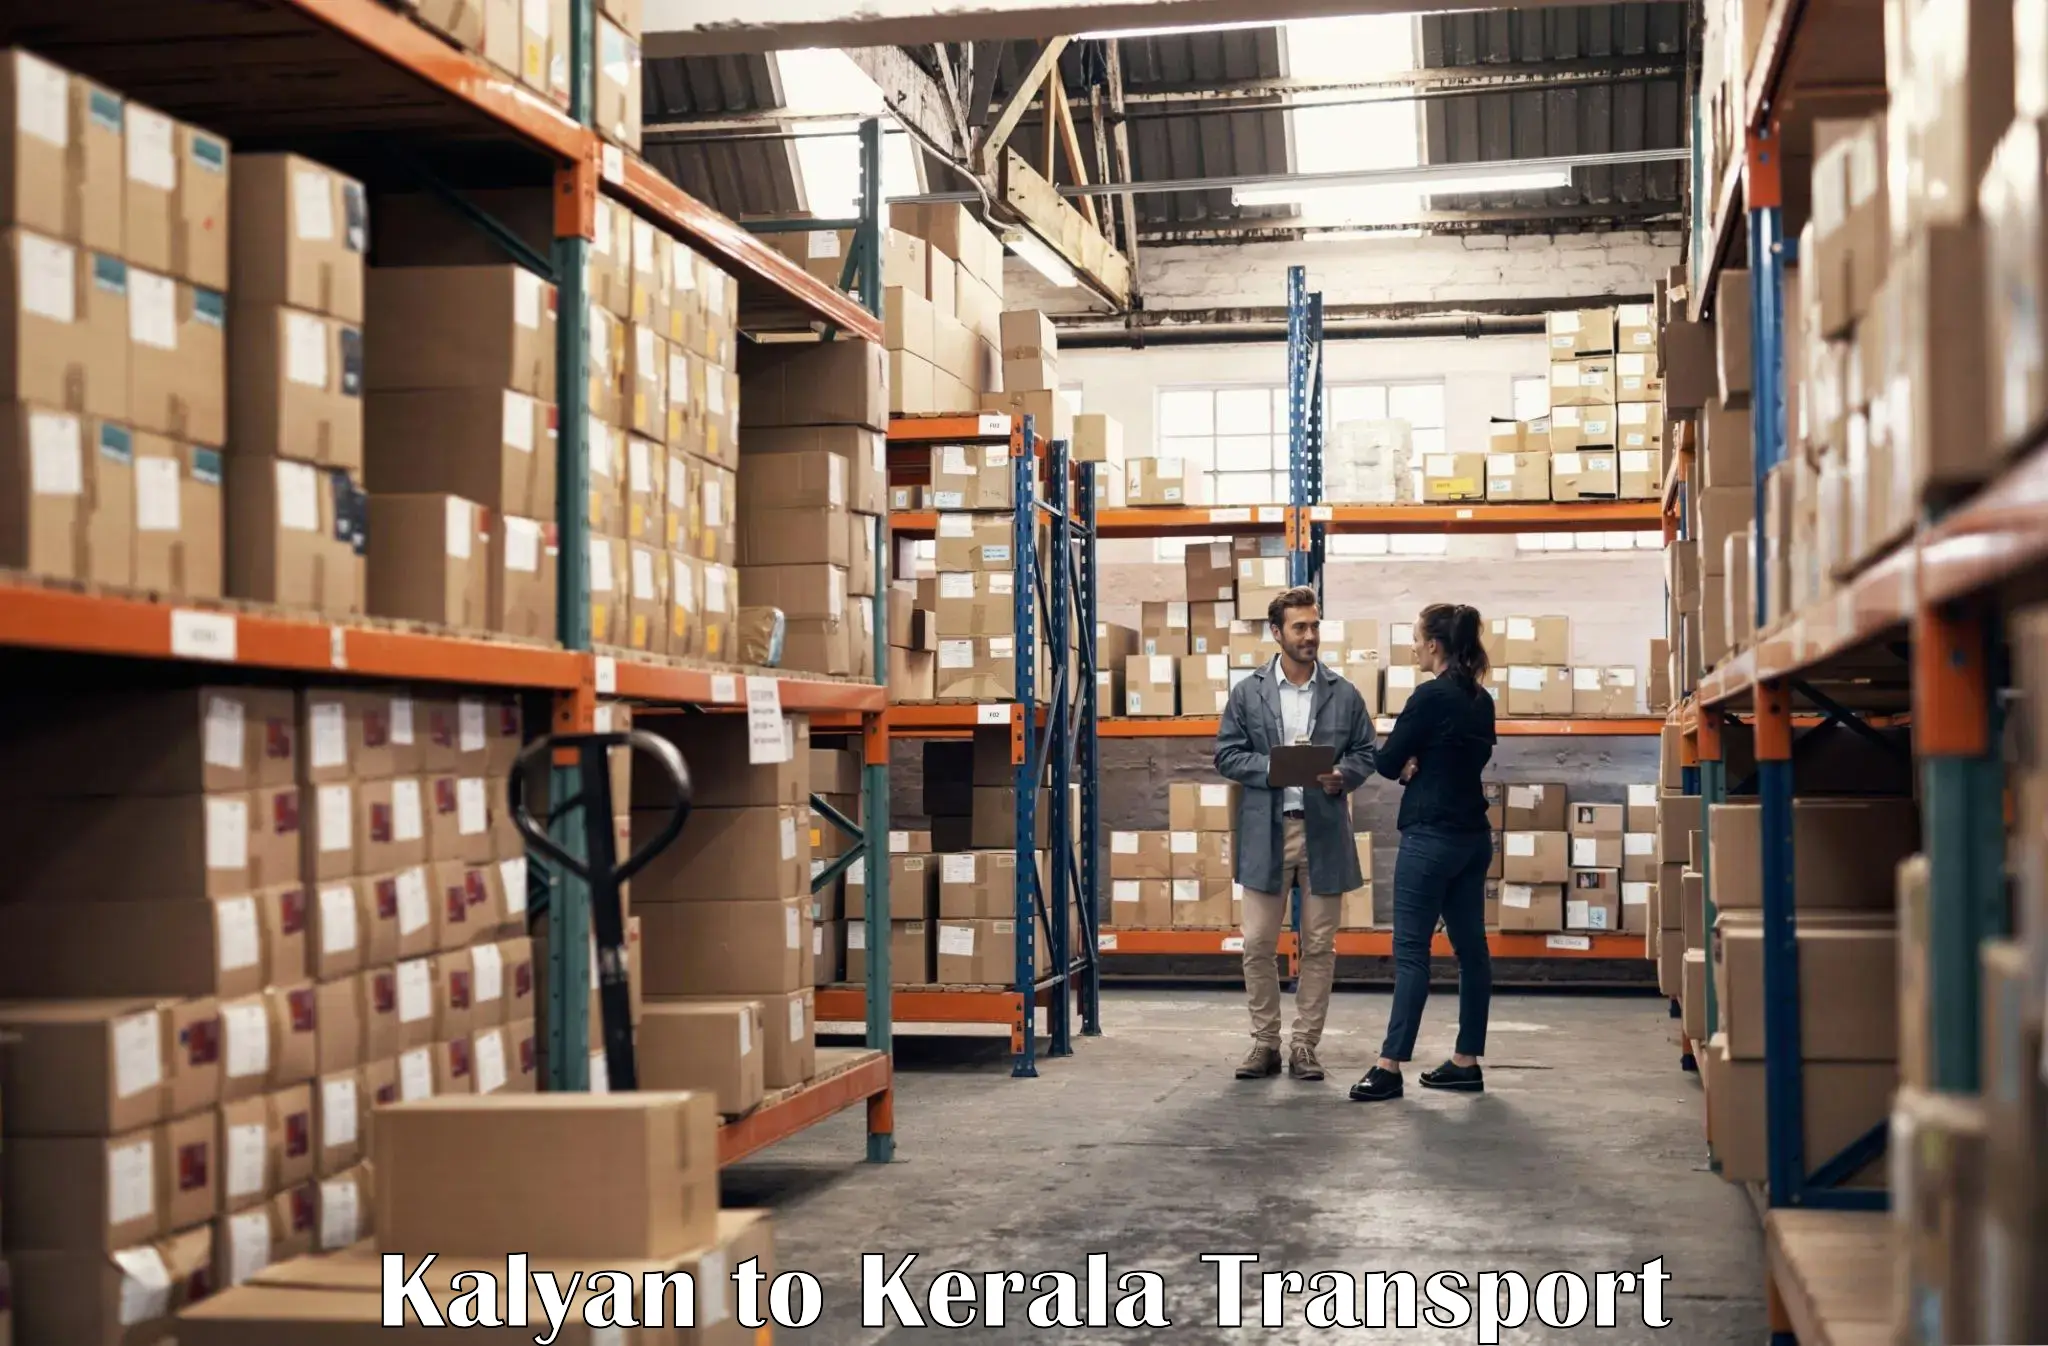 Container transport service Kalyan to Cherpulassery